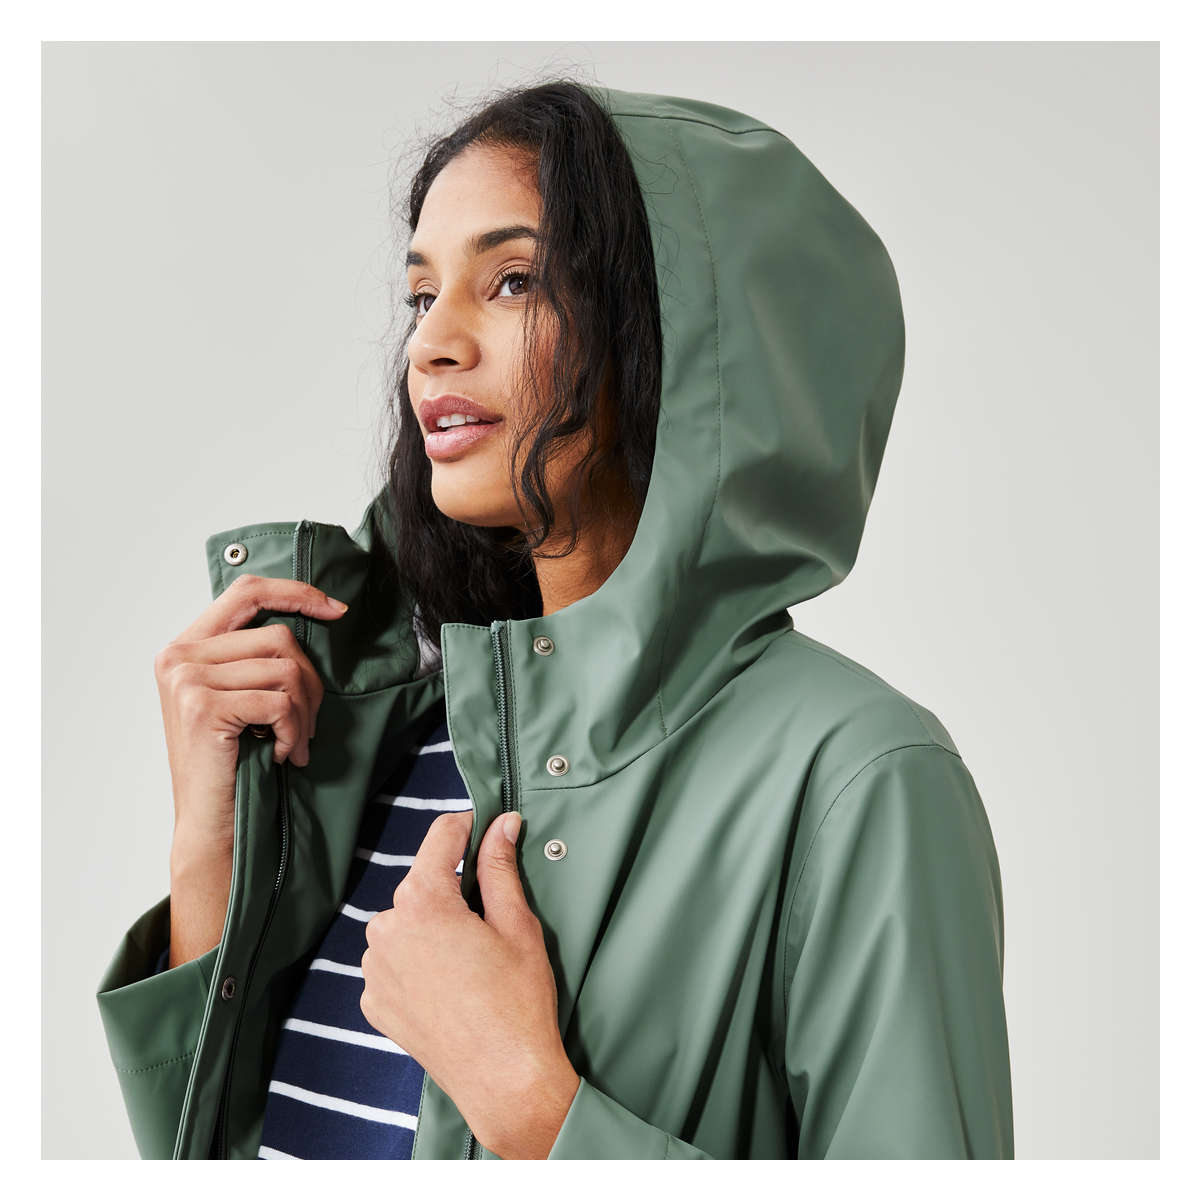 Women's fisherman's summer raincoat – hey jojo!